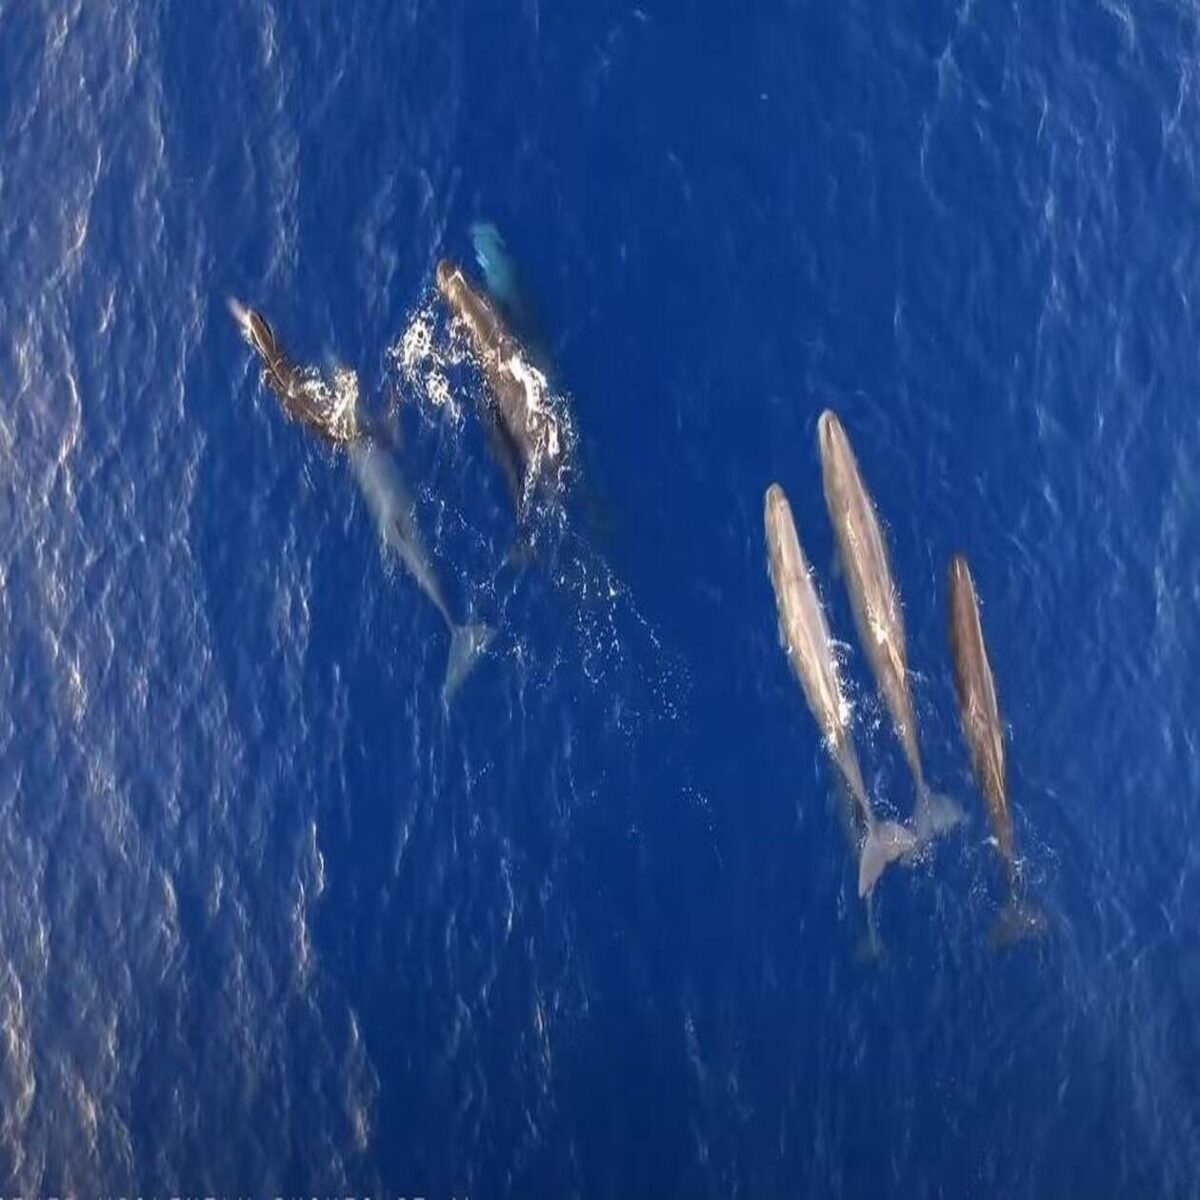 Ιόνιο Πέλαγος: Υπέροχες στιγμές με κοπάδι φαλαινών να ταΐζει τα μικρά του